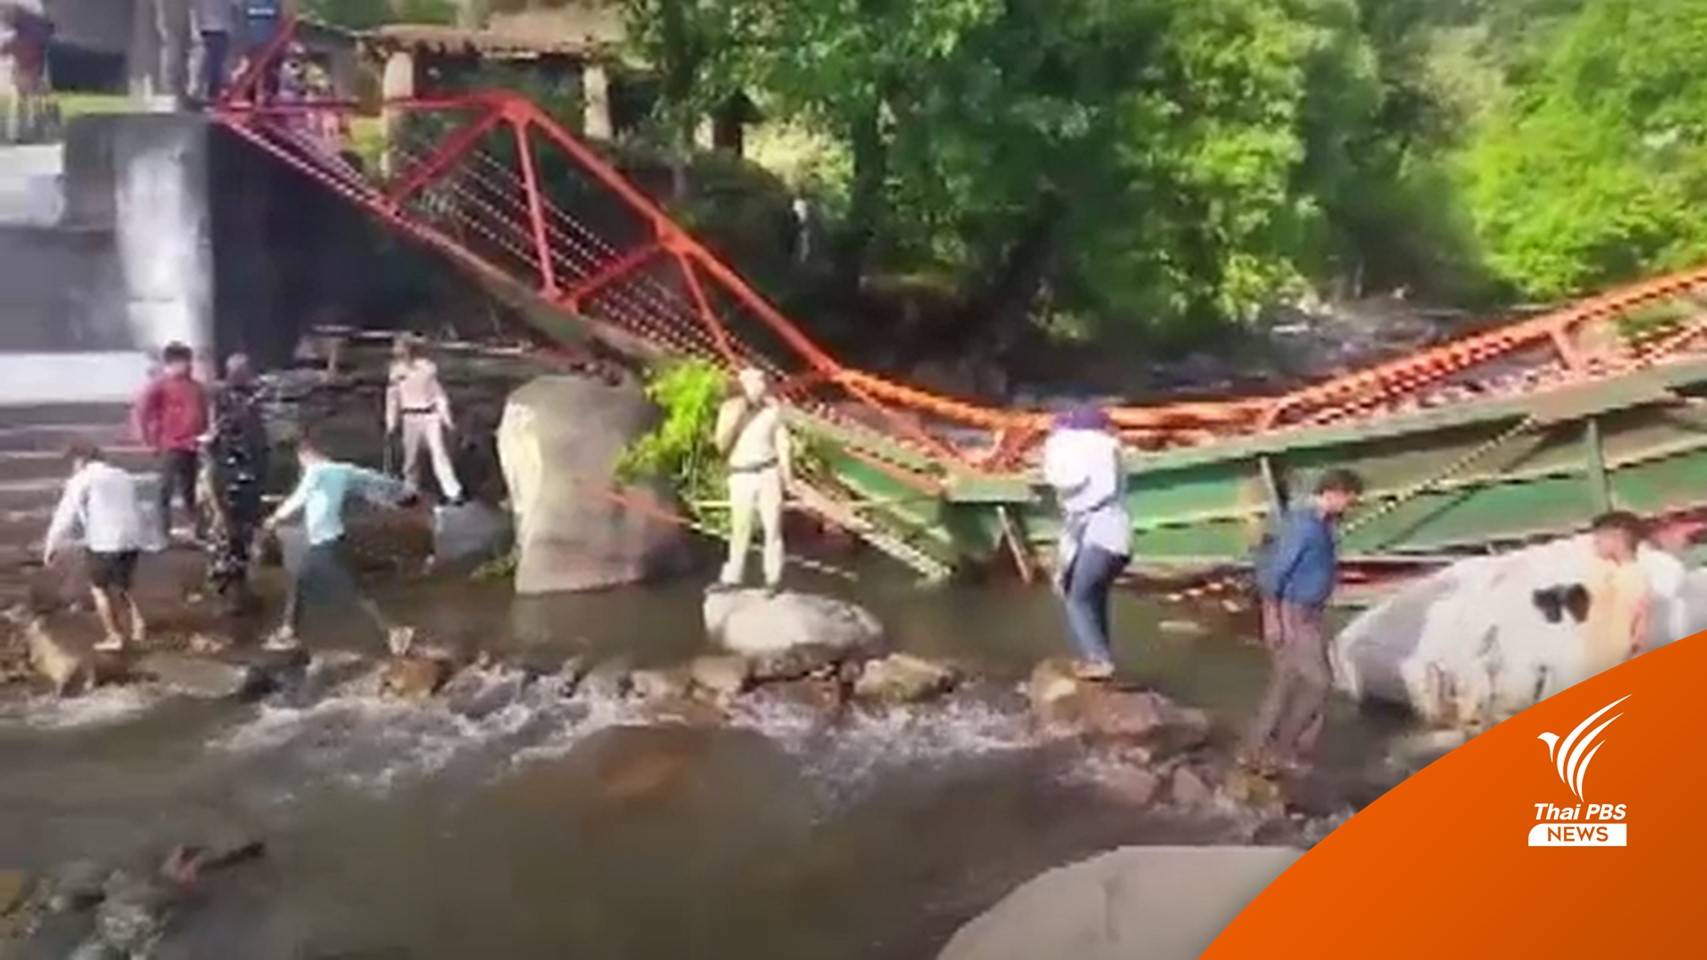 สะพานคนเดินในอินเดียพังถล่ม ตาย 1 เจ็บมากกว่า 70 คน